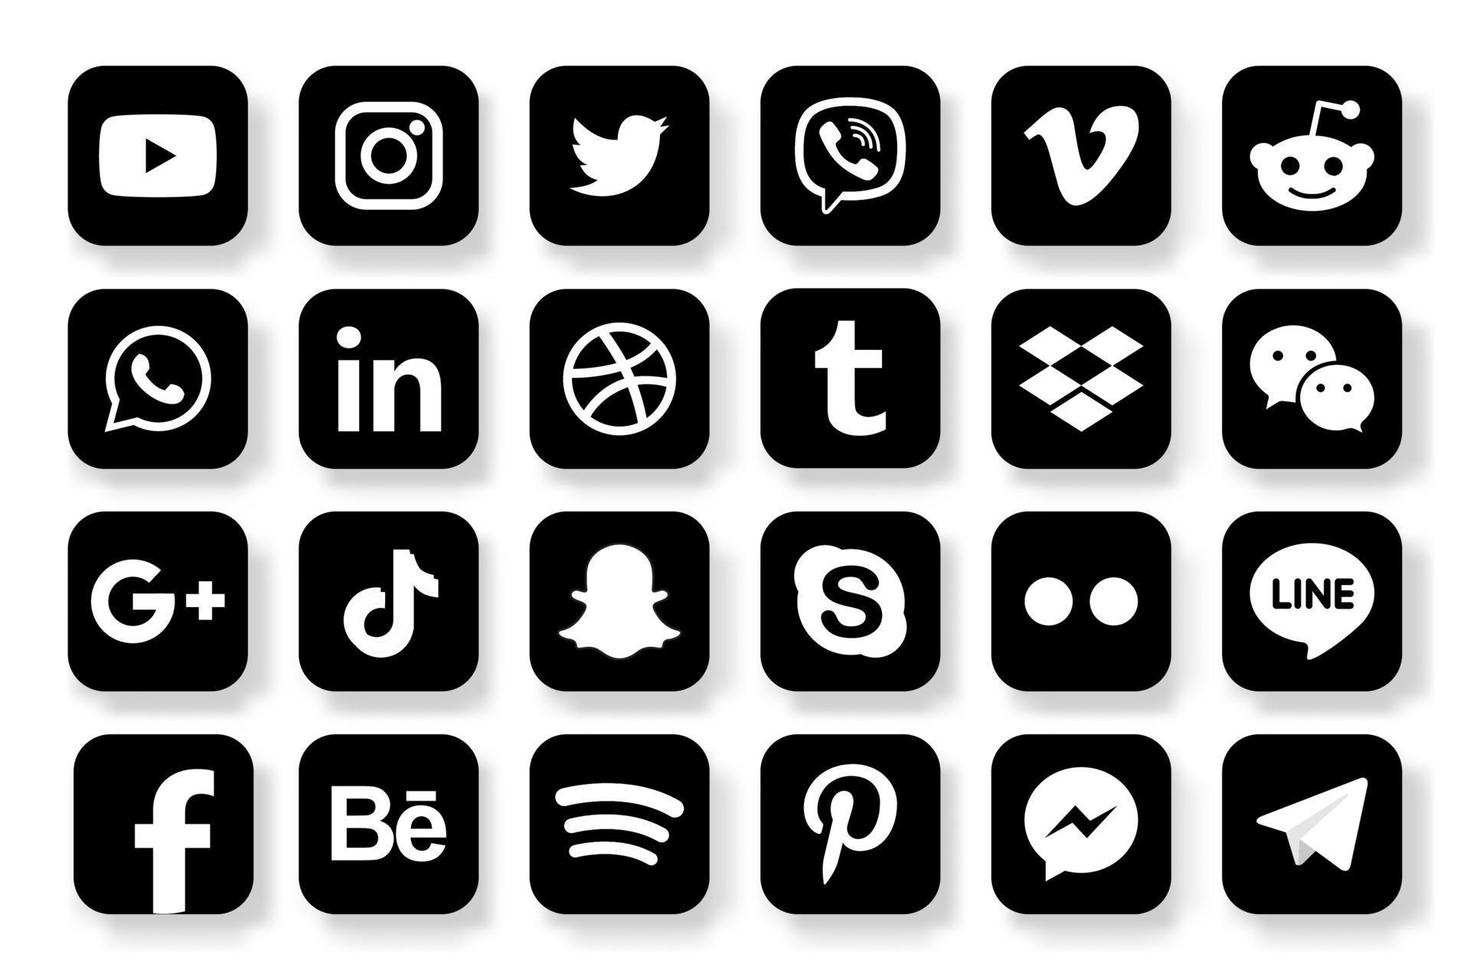 ställ in populära ikoner för sociala medier. facebook, instagram, twitter, youtube, pinterest, behance, google plus, linkedin, whatsapp, snapchat, tiktok, tumblr, spotify, dropbox och många fler vektor